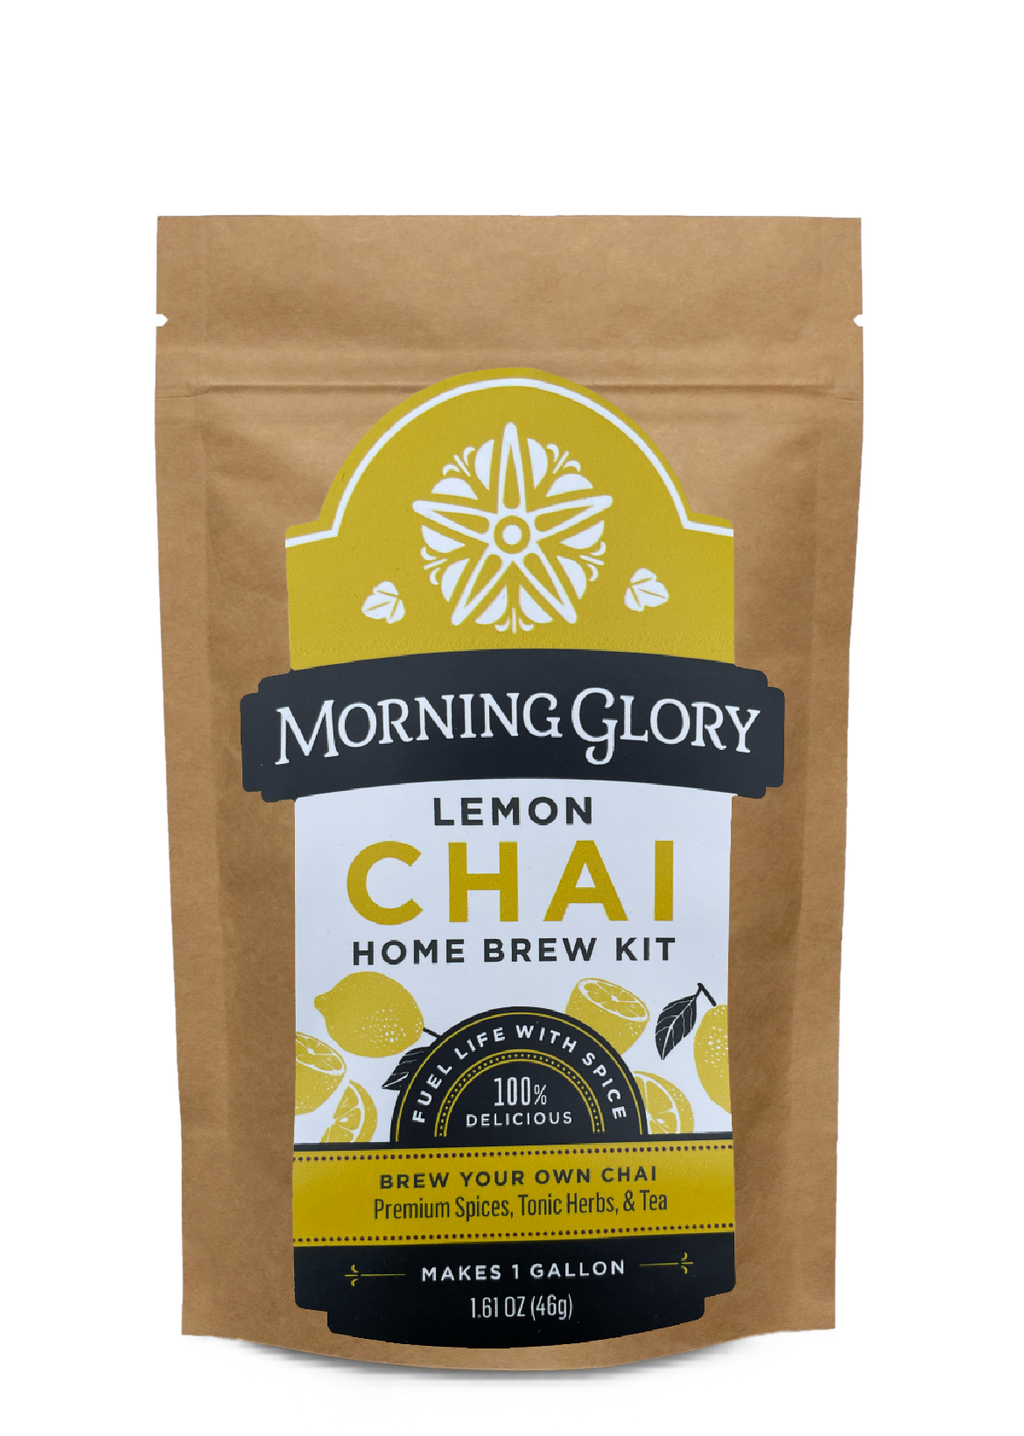 Lemon Chai Home Brew Kit